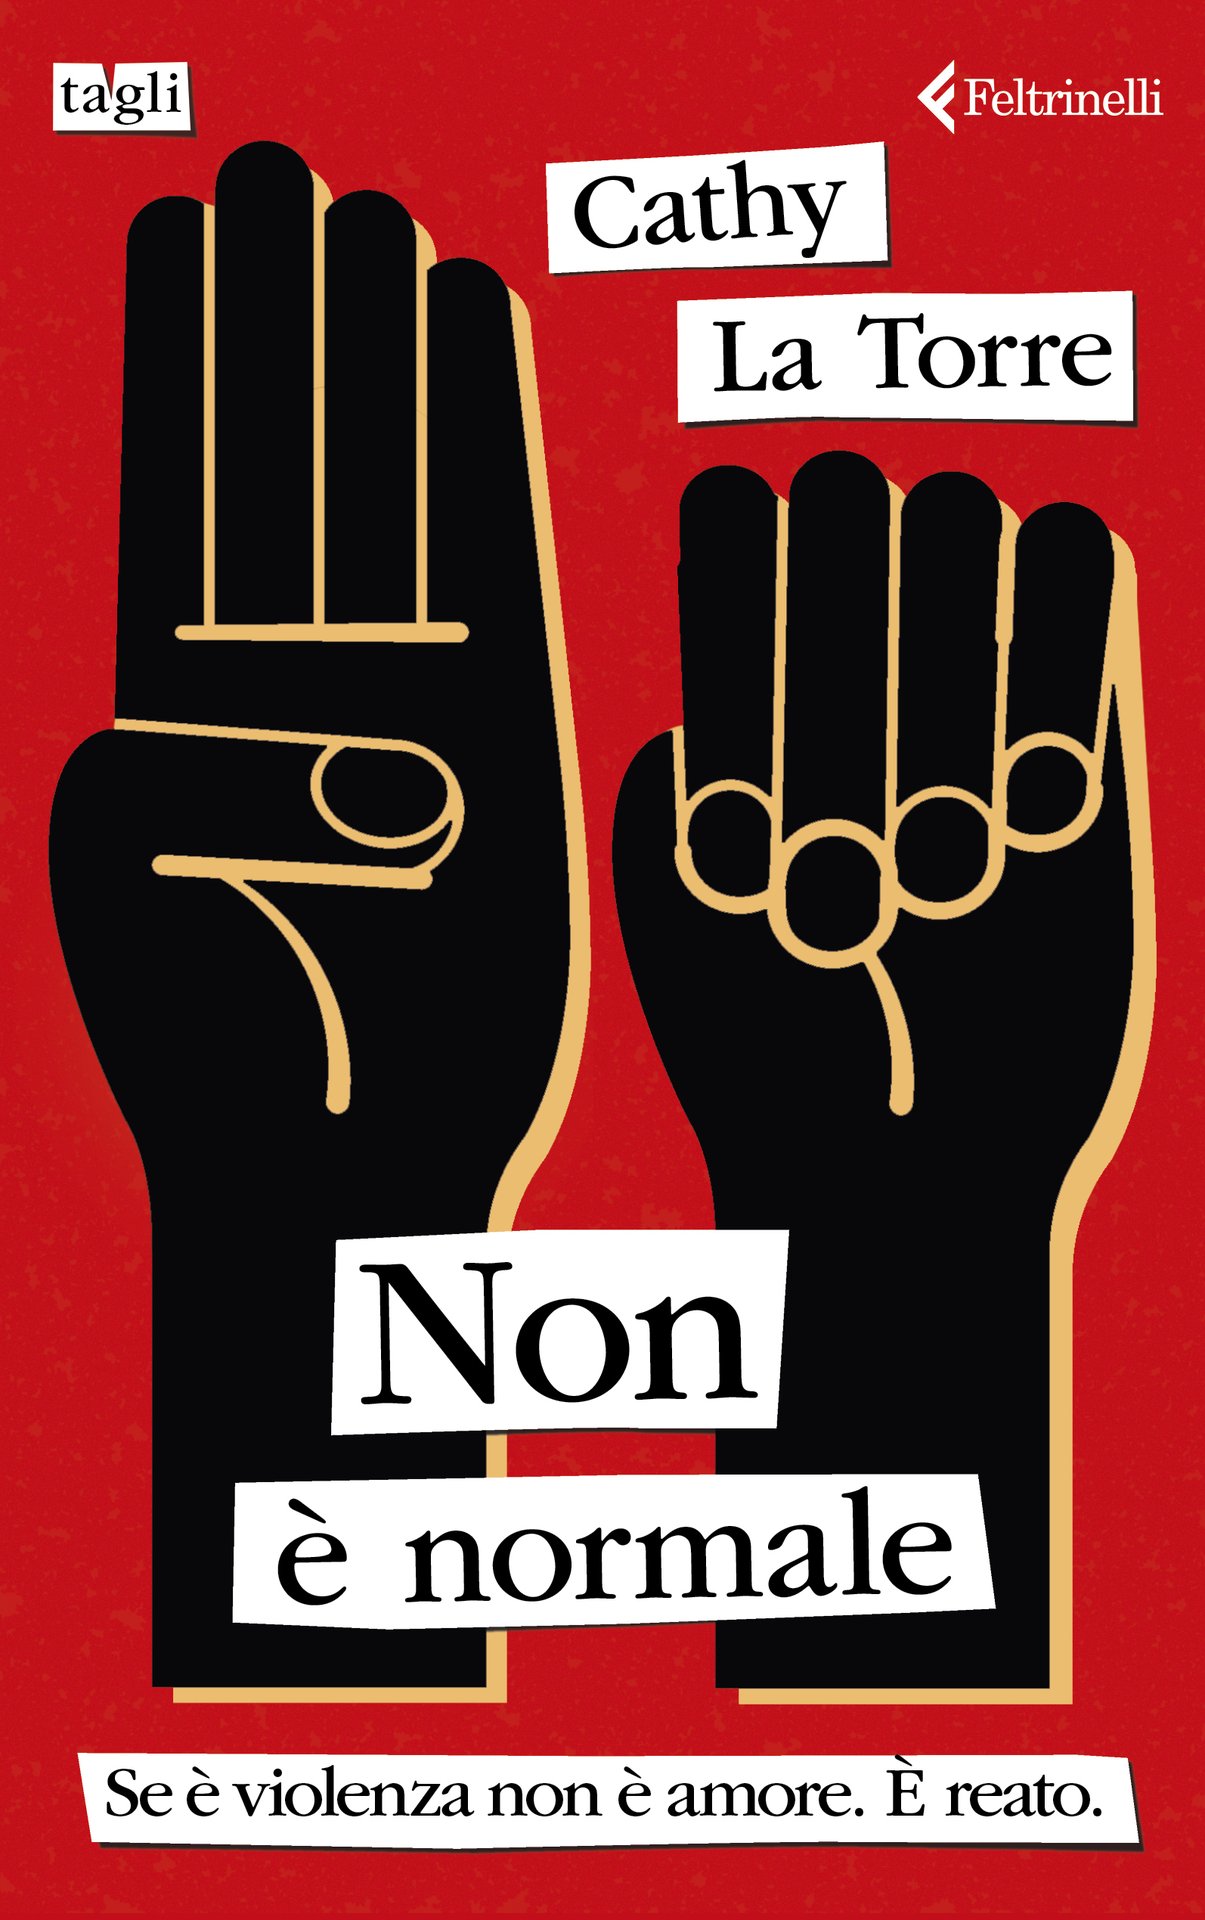 Cathy La Torre presenta "Non è normale" a Palermo